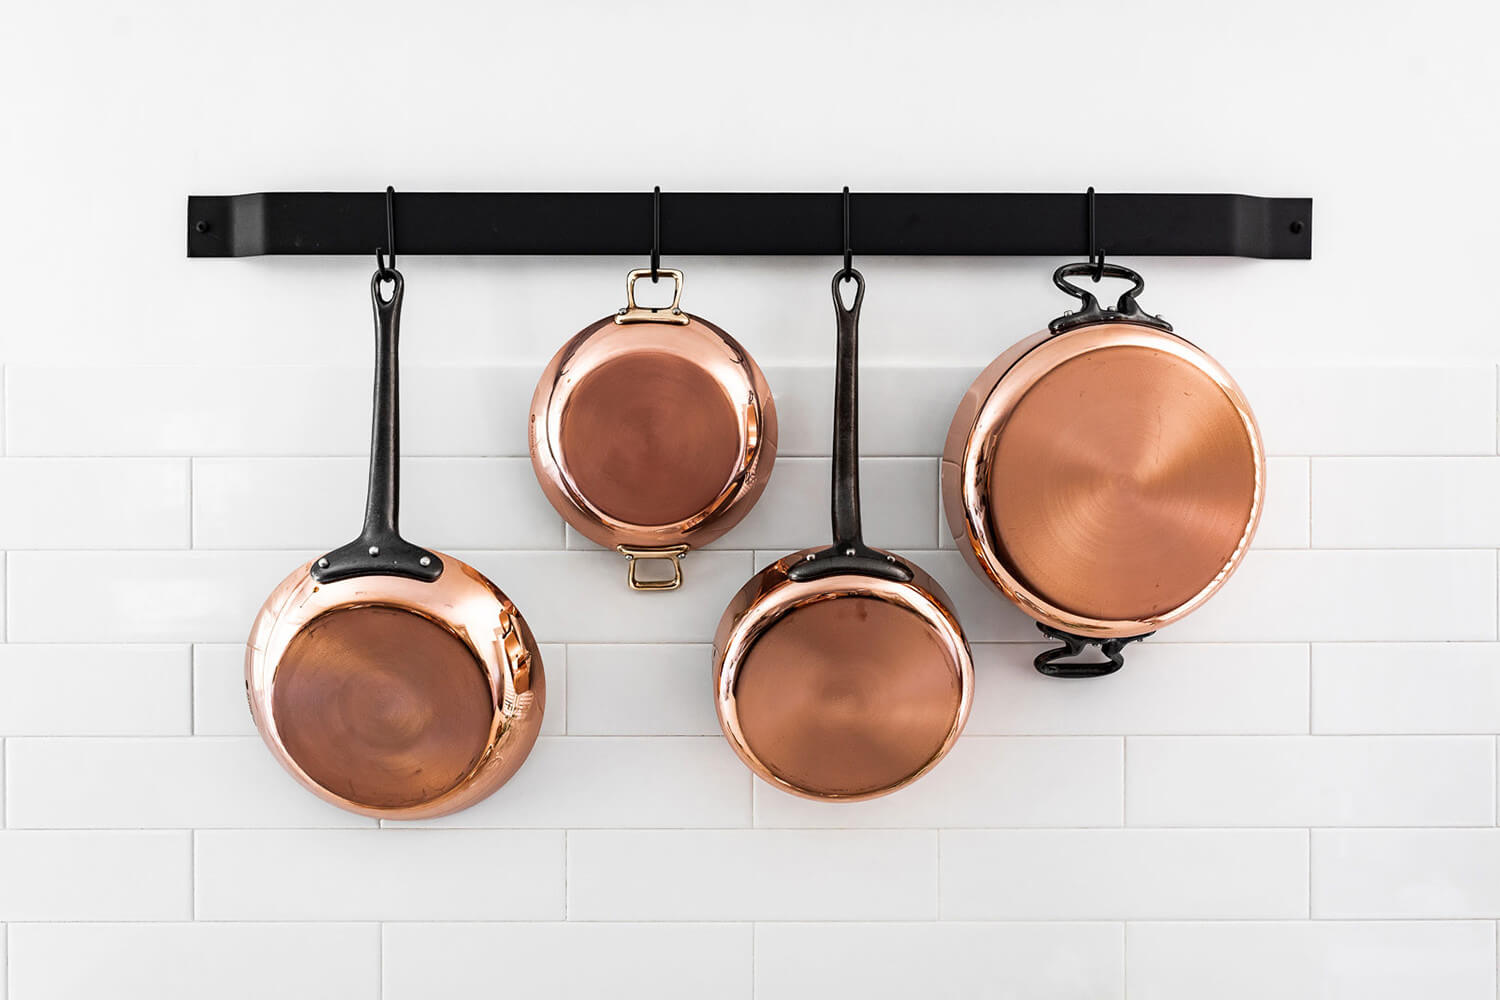 Set de 5 casseroles en cuivre De Buyer Inocuivre poignée en fonte d'acier